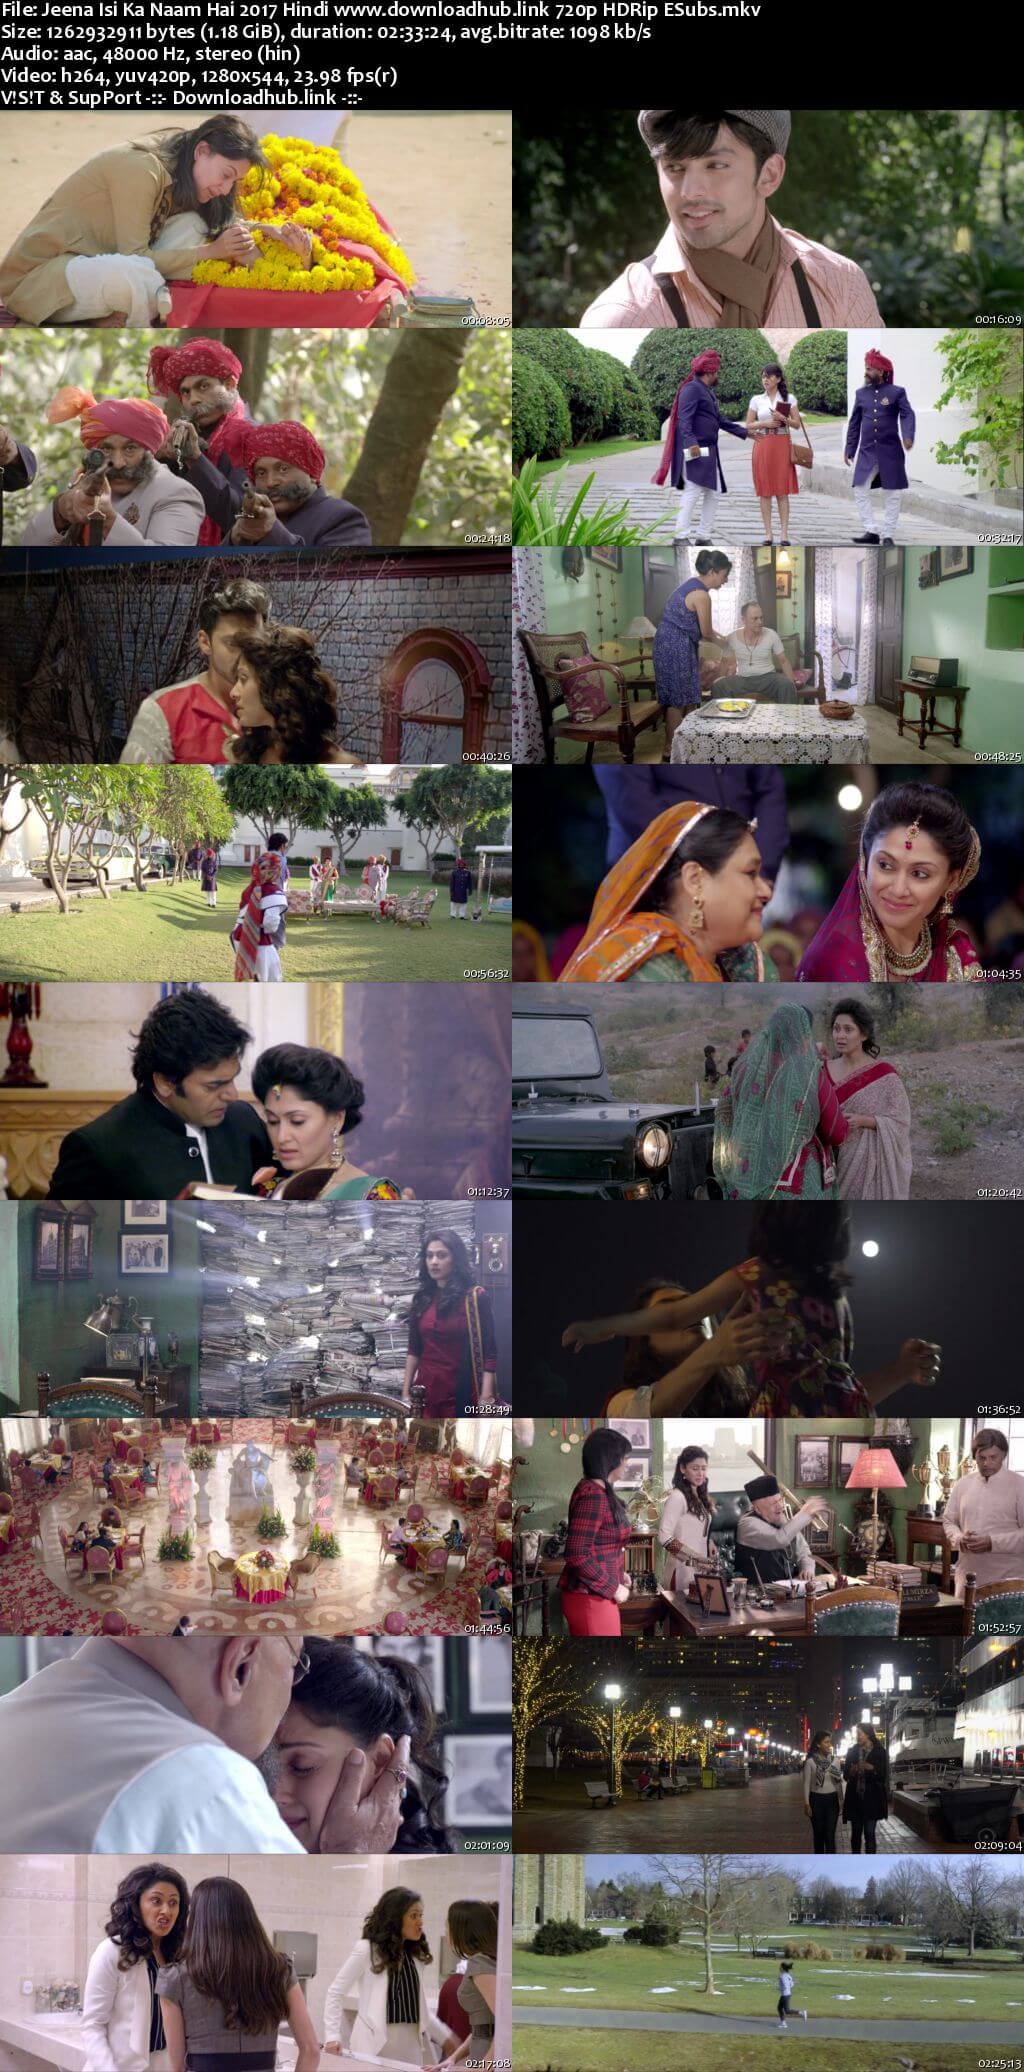 Jeena Isi Ka Naam Hai 2017 Hindi 720p HDRip ESubs